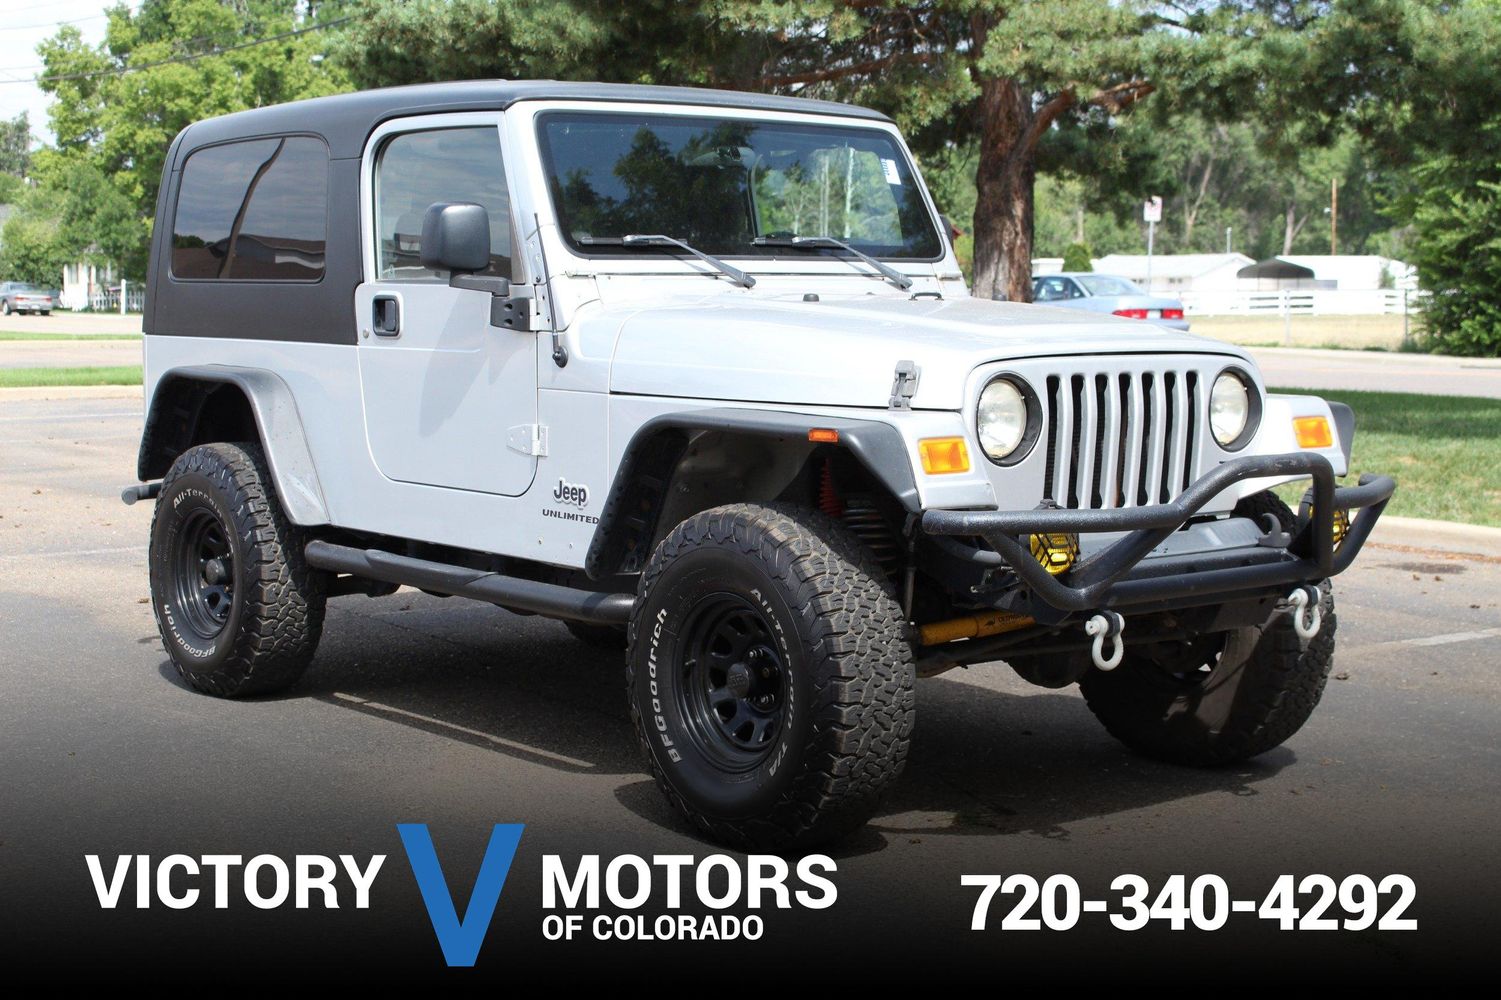 2006 Jeep Wrangler Unlimited | Victory Motors of Colorado